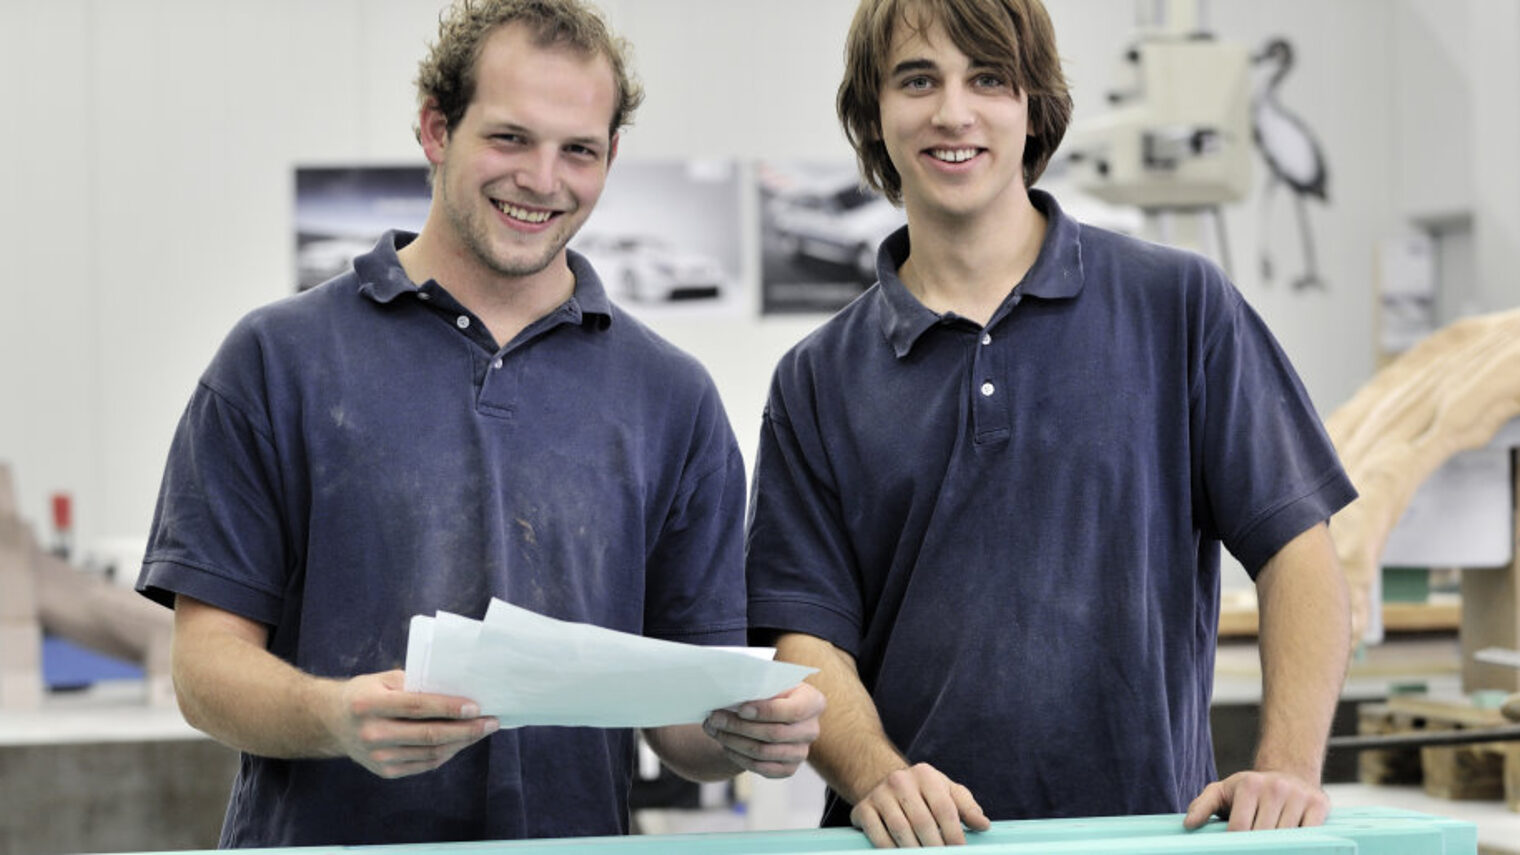 Zwei junge Männer stehen nebeneinander in einer Werkstatt und lächeln in die Kamera. Einer hält mehrere Blätter Papier.